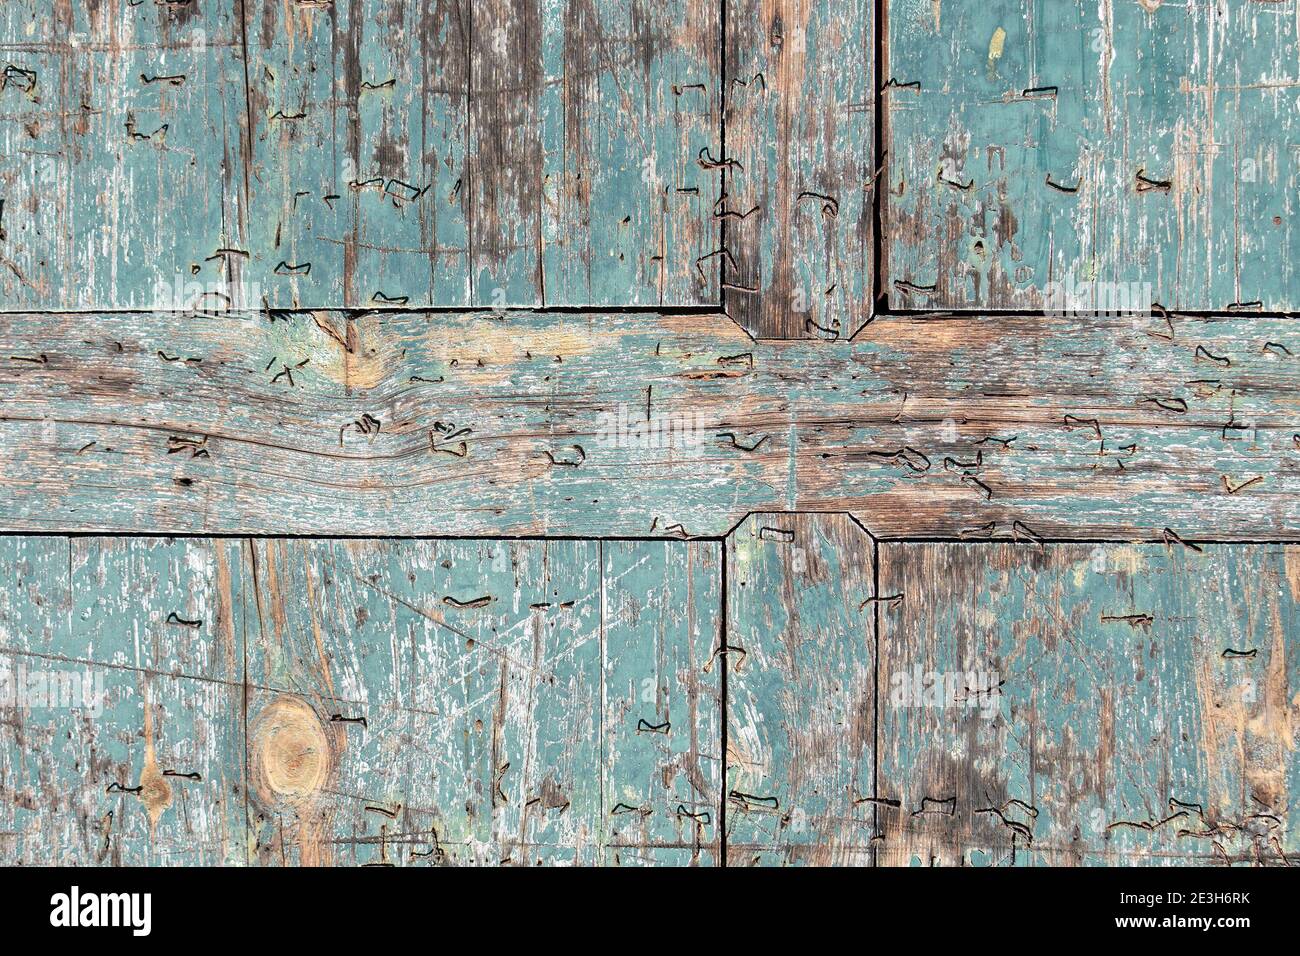 Alte Holz Textur Hintergrund mit teal farbigen abgebropfte Farbe und heftklammern Stockfoto